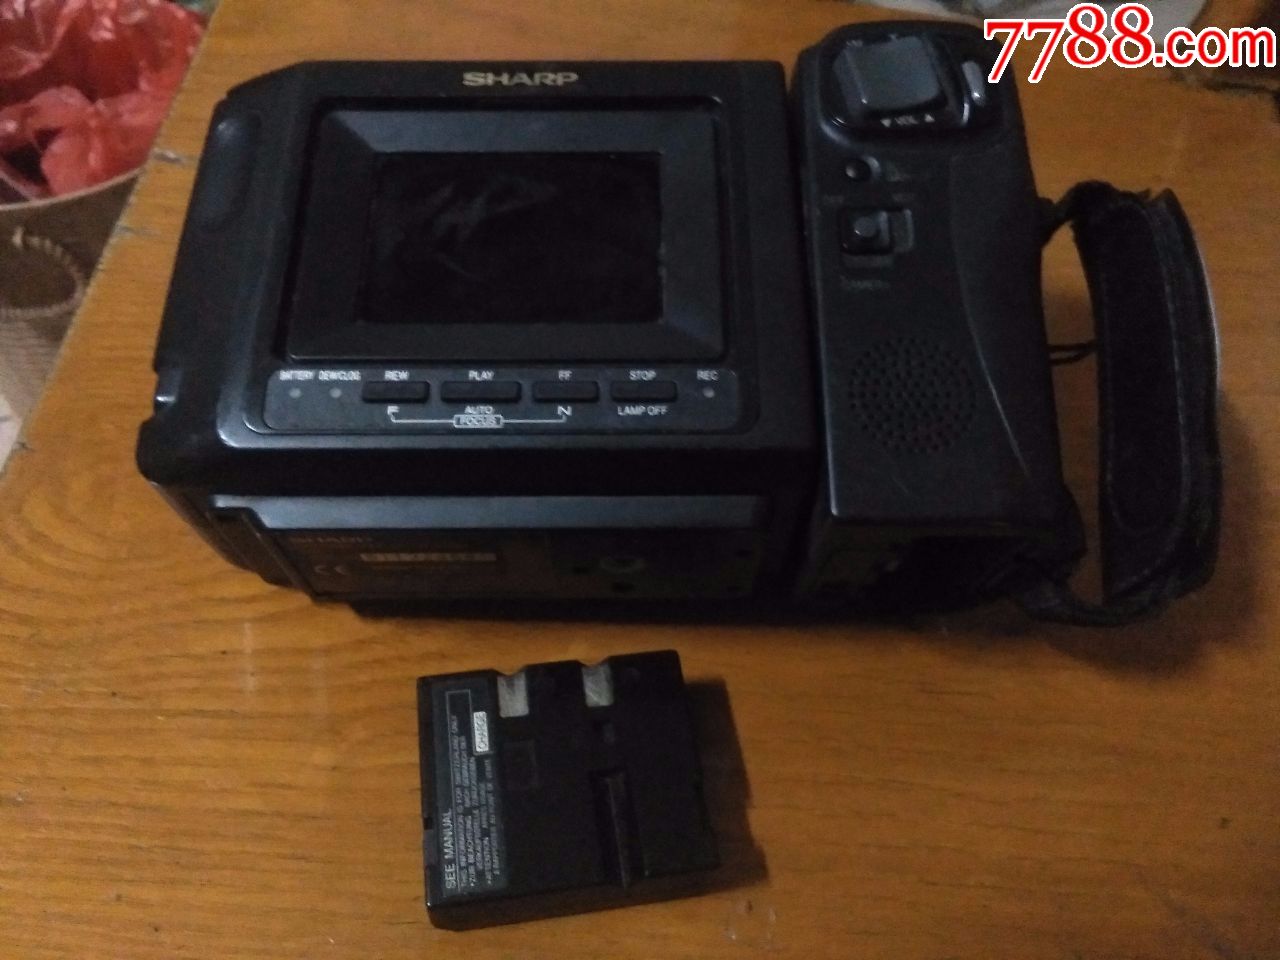 sharp-vl-e34h磁带摄像机